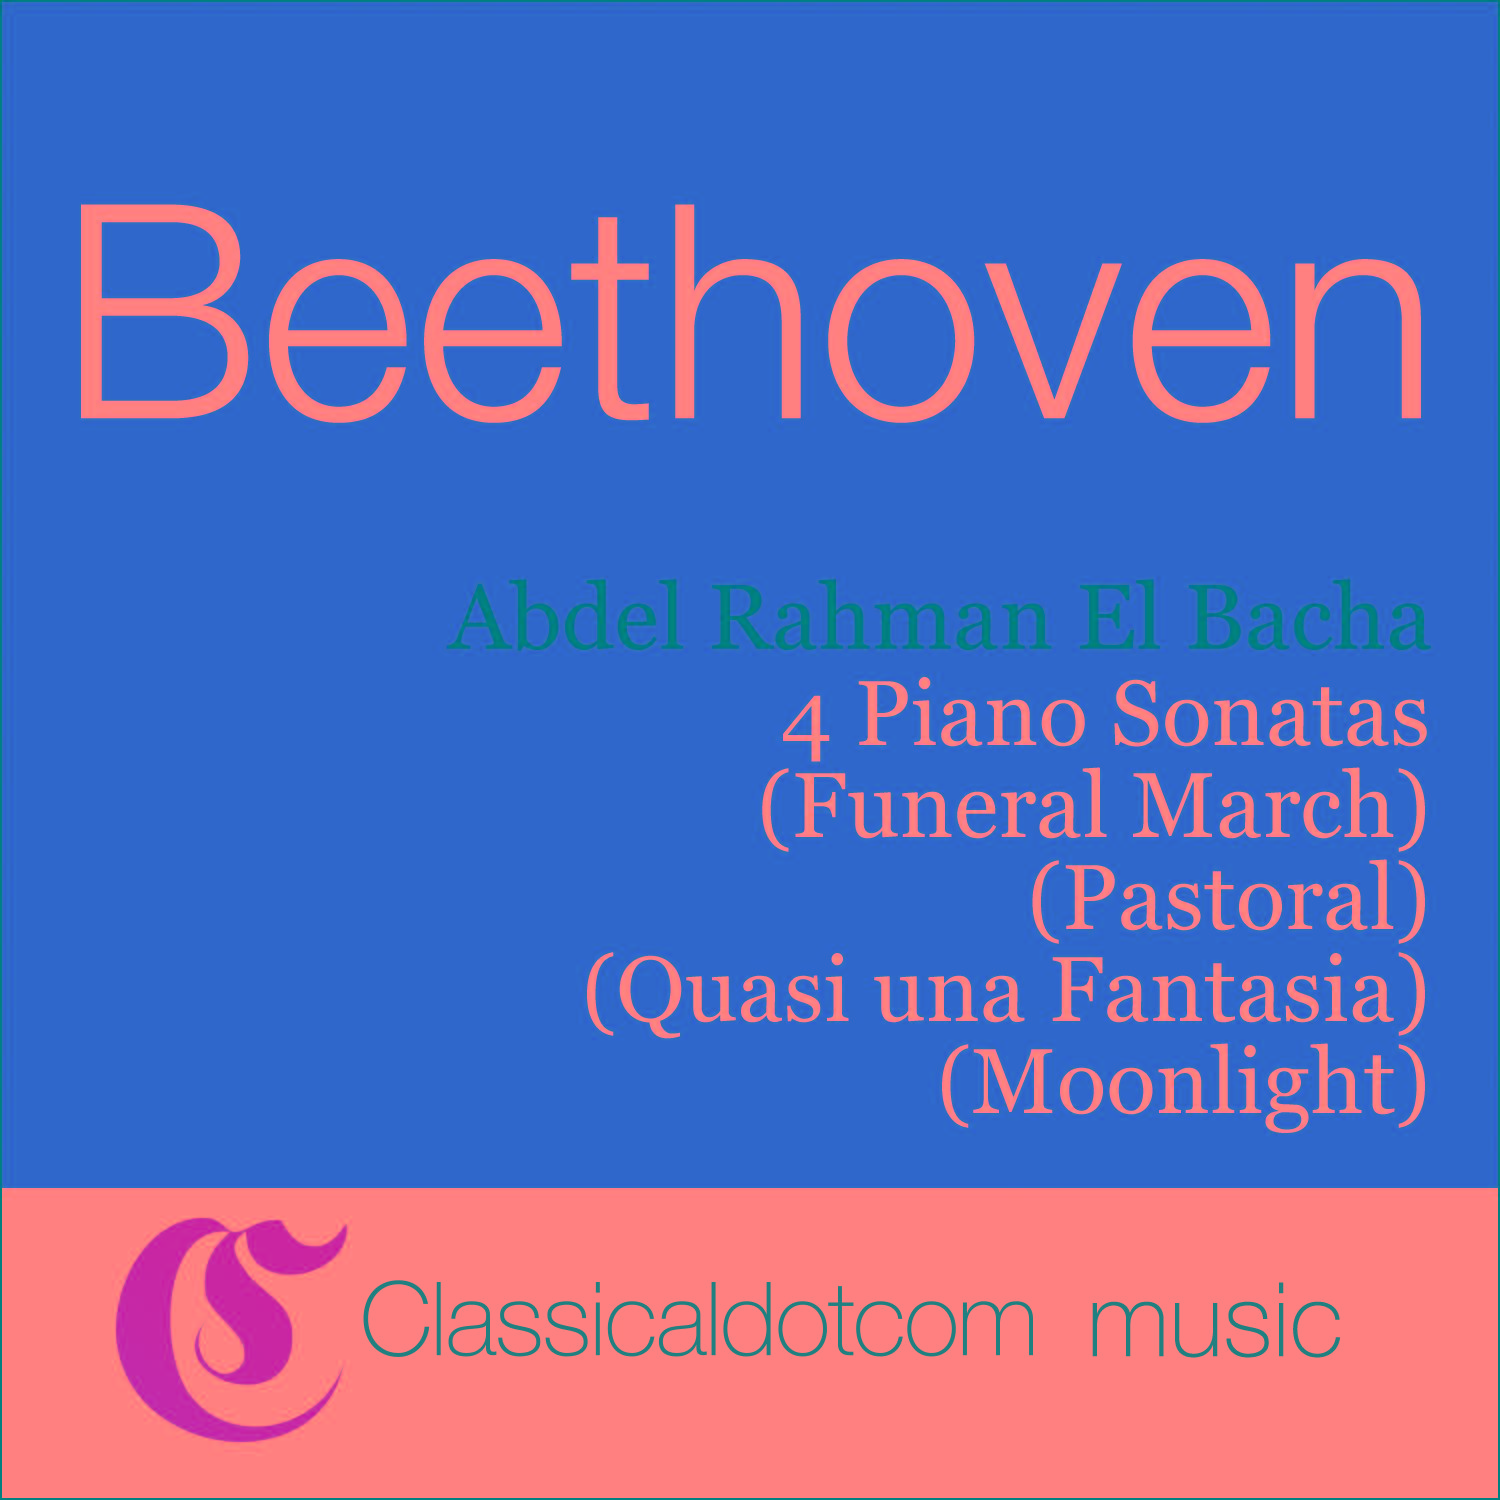 Piano Sonata No. 15 in D, Op. 28 Pastoral  Rondo: Allegro ma non troppo  Piu allegro quasi presto